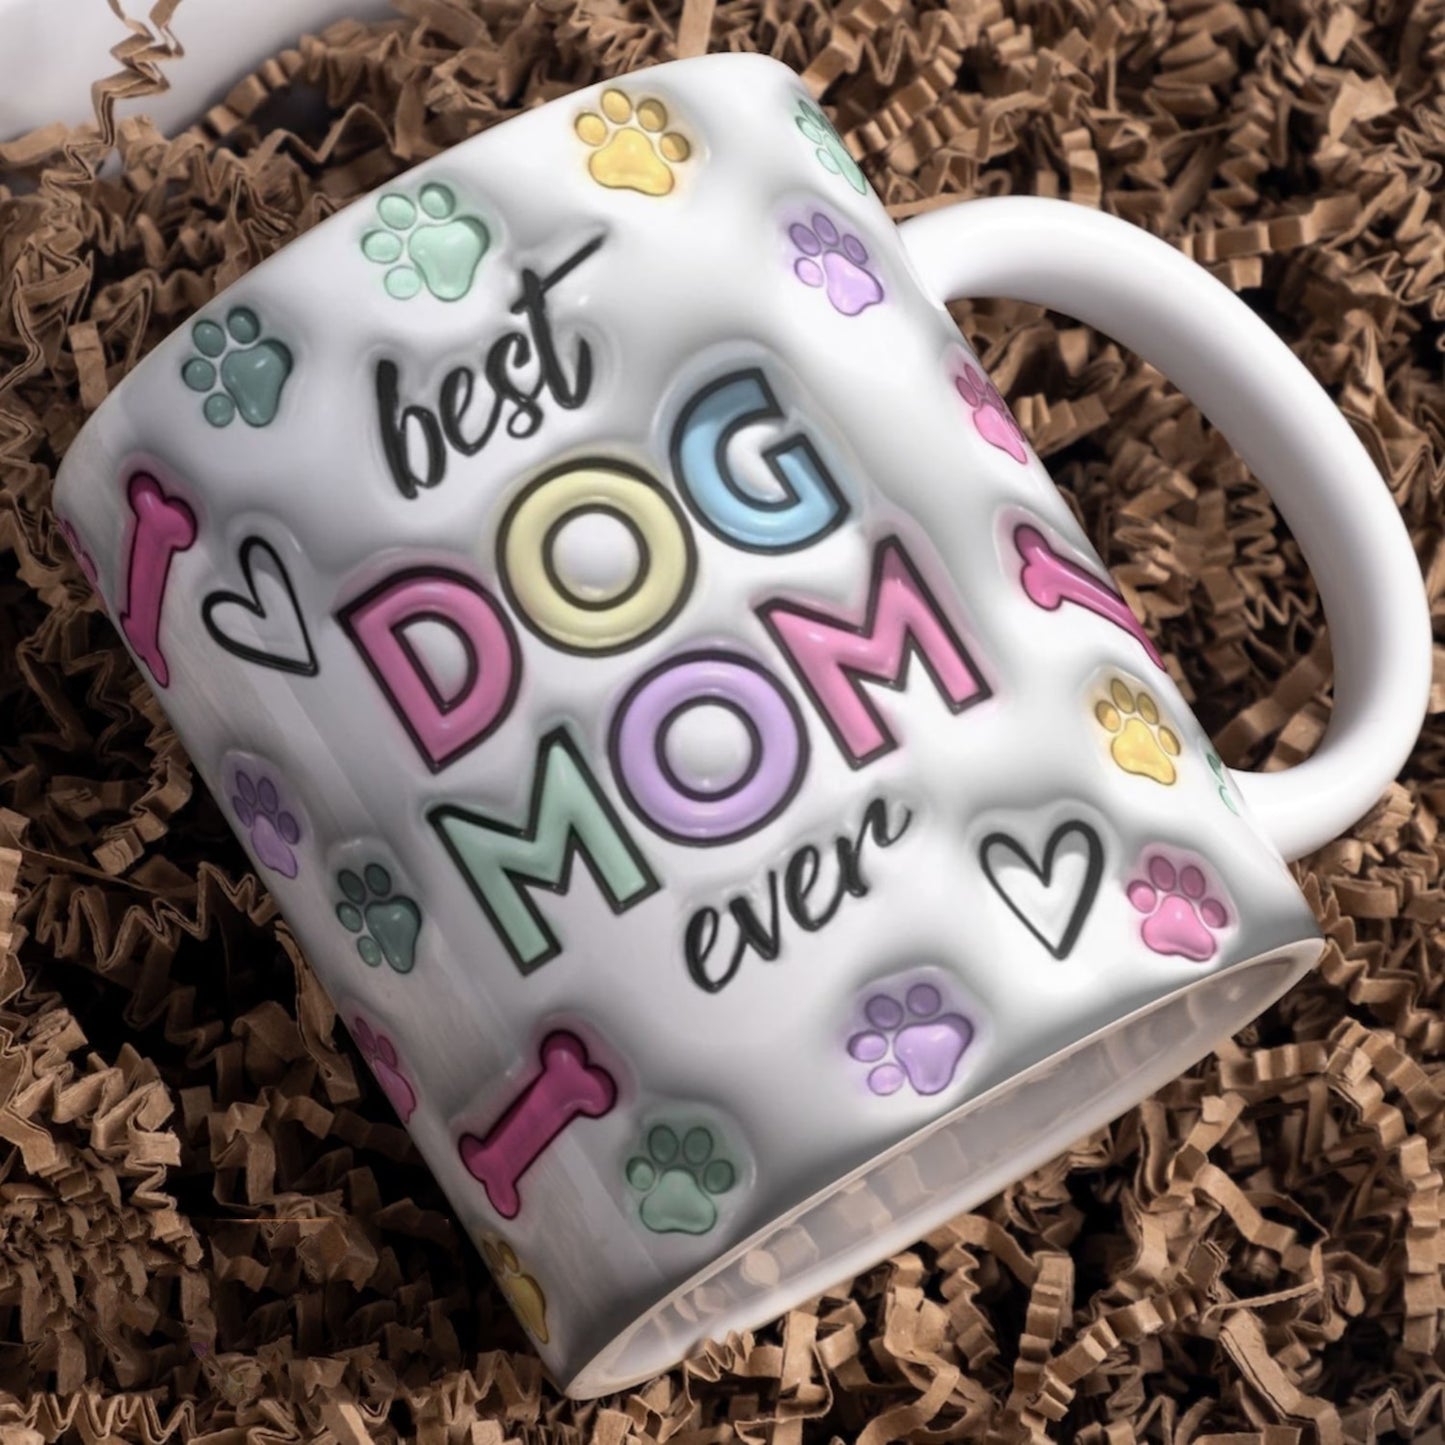 母の日祝 Dog Mom Dog Dad - 個性化された3D膨らませ効果プリントマグ クロースタイル  ピン·白いマグカップク